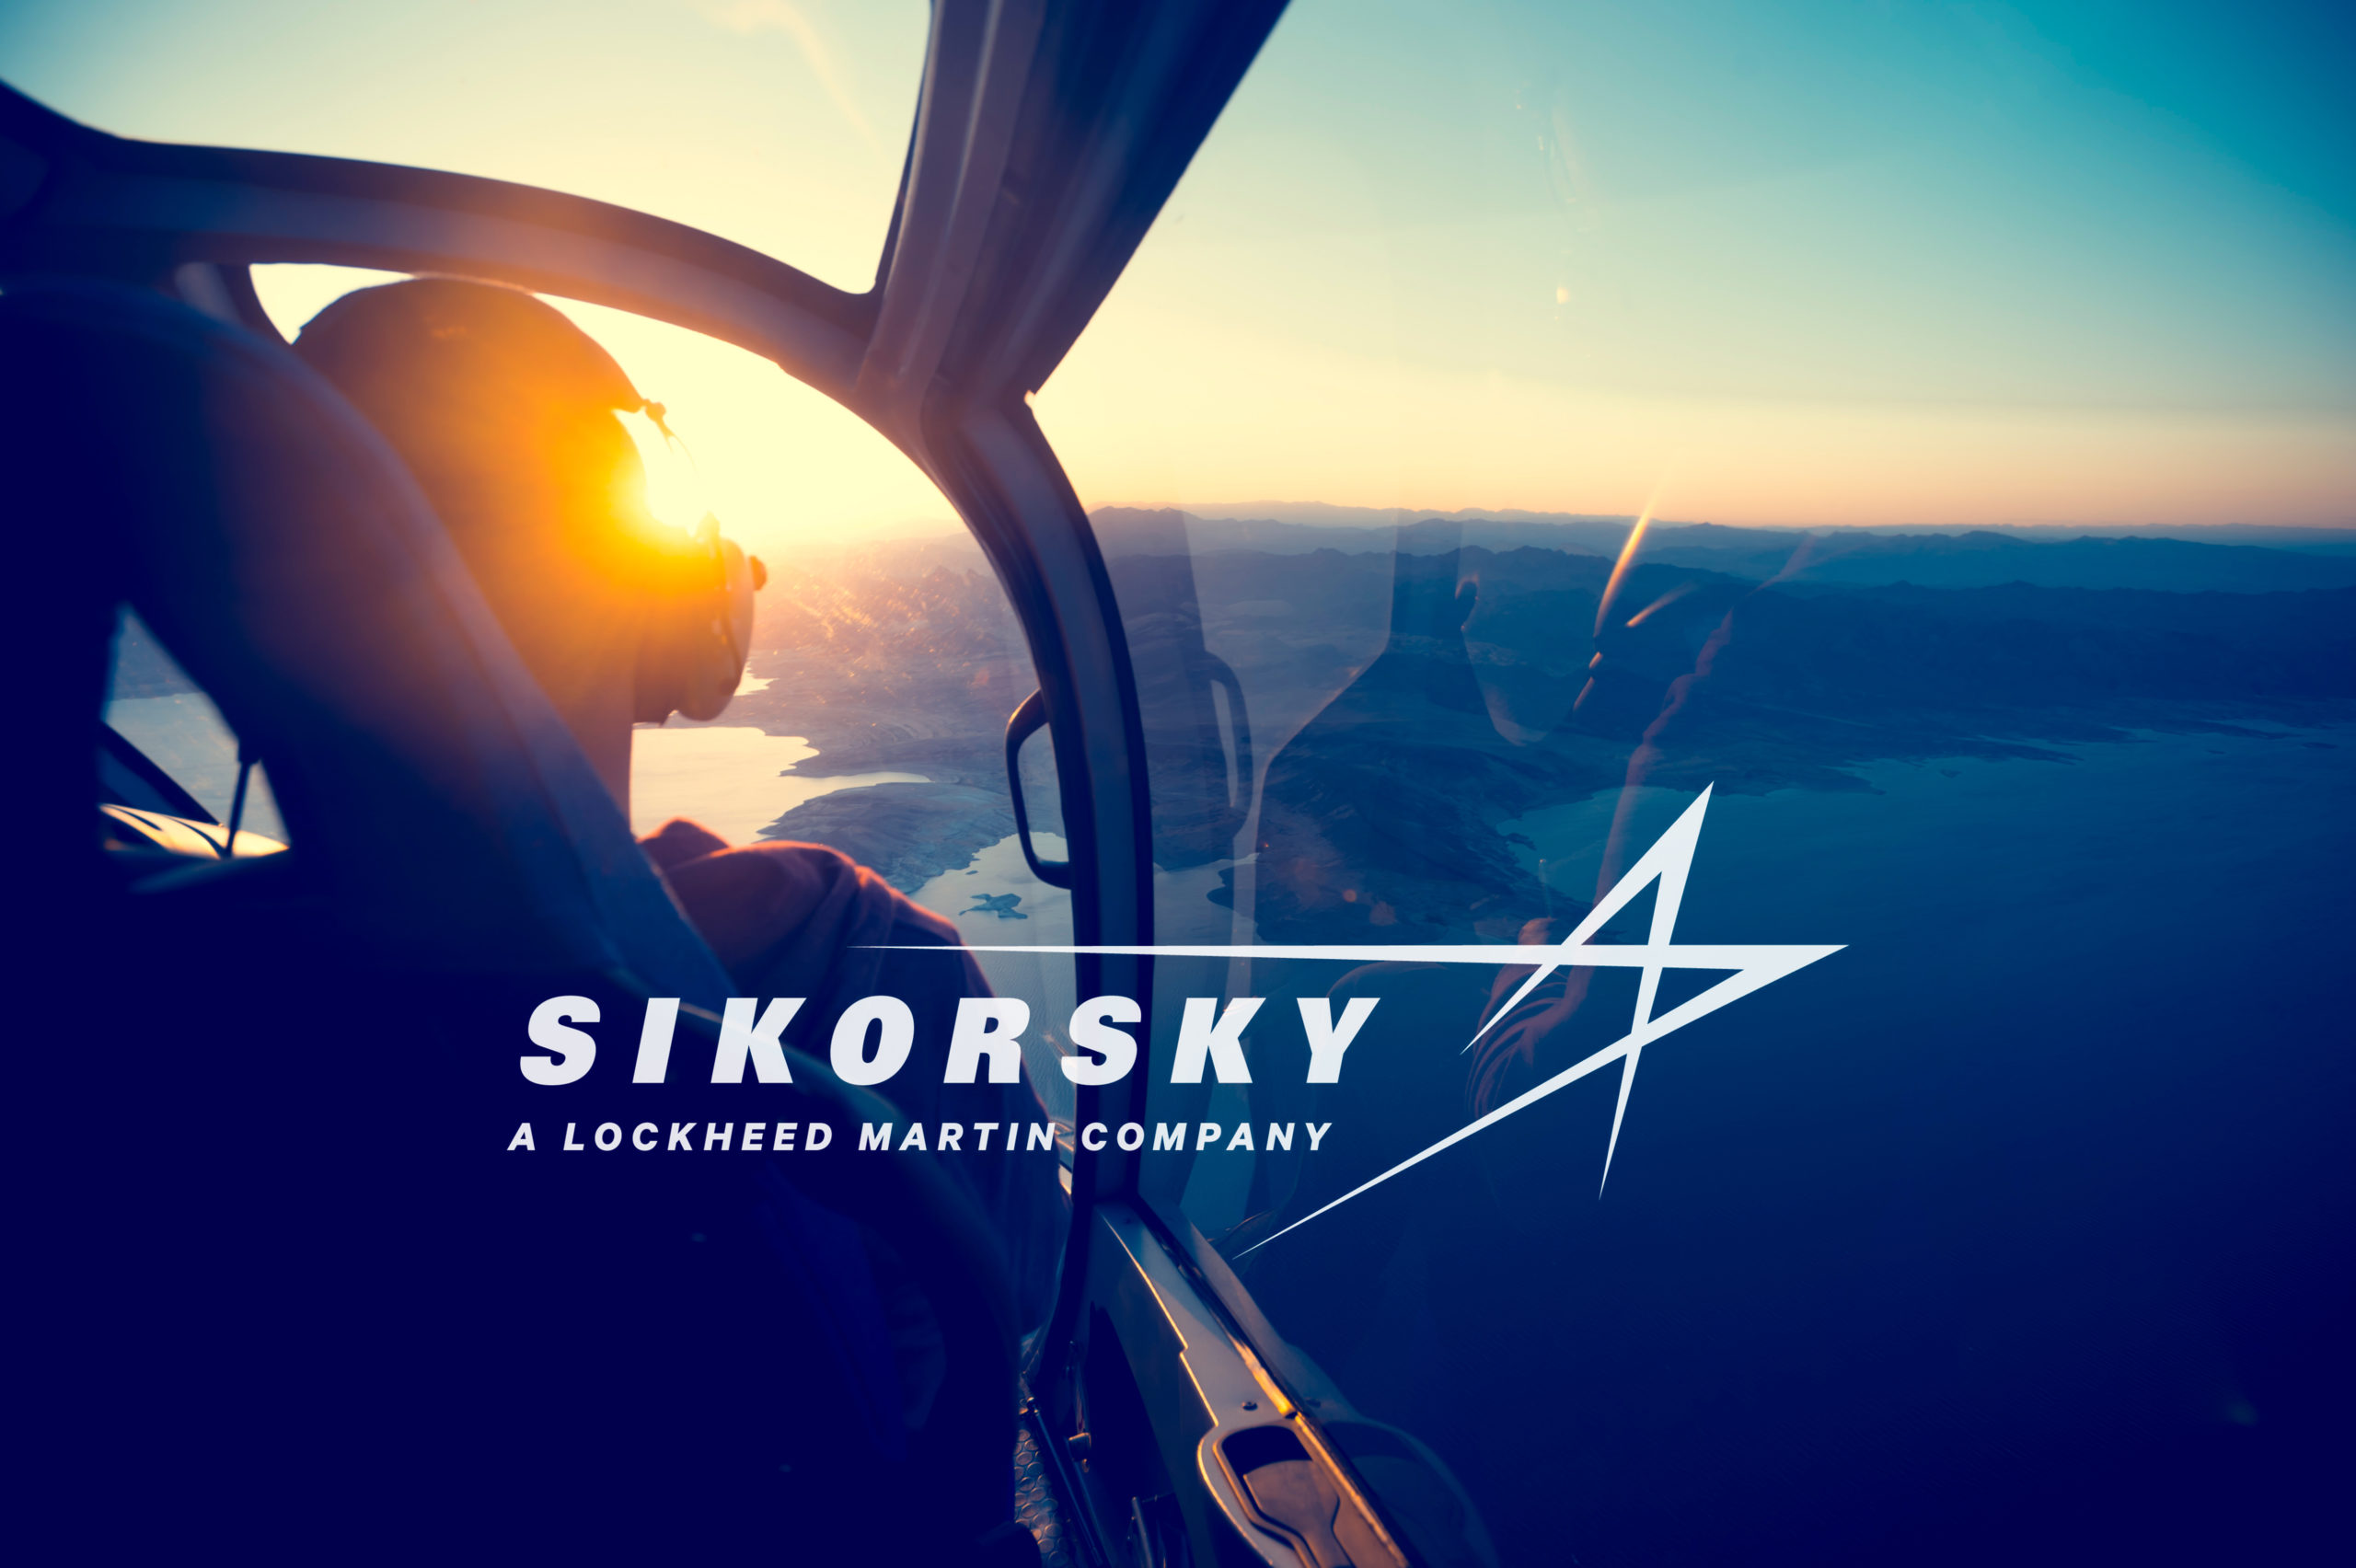 Sikorsky a Lockheed Martin Company